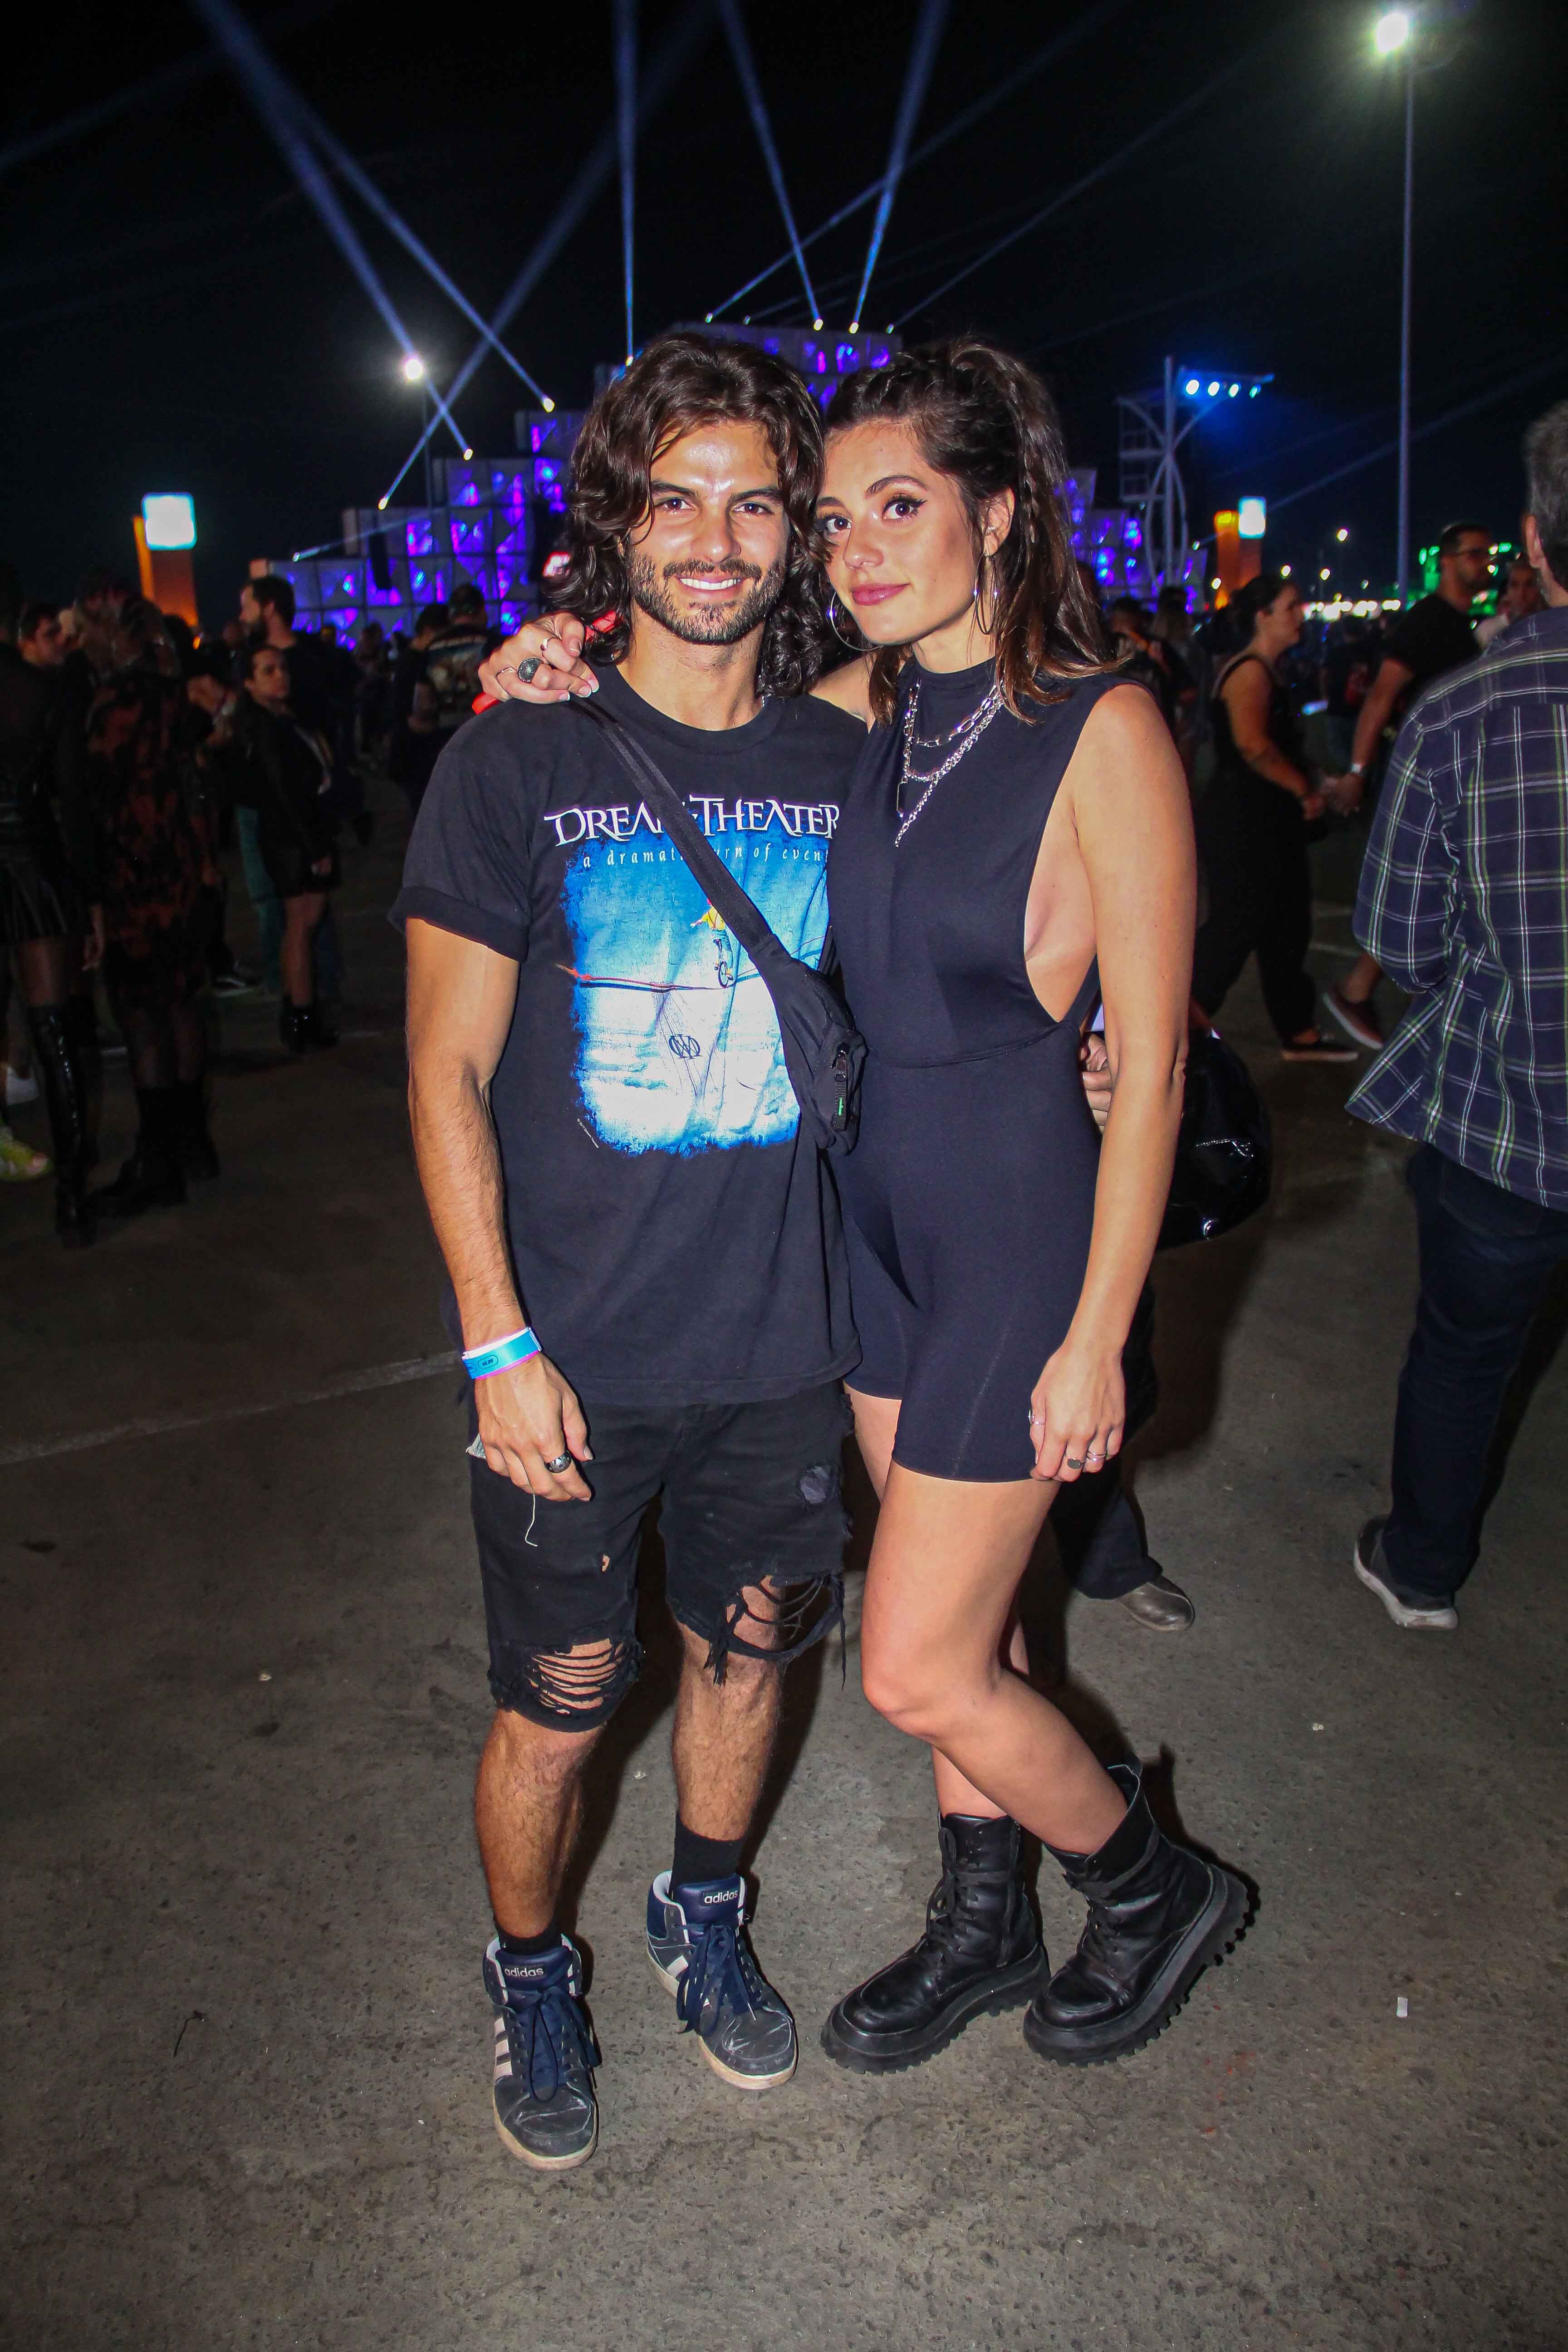 Ator Daniel Blanco com camiseta da banda 'Dream Theater' ao lado da namorada Anna Rita (Foto: Marcos Ferreira/Brazil News)